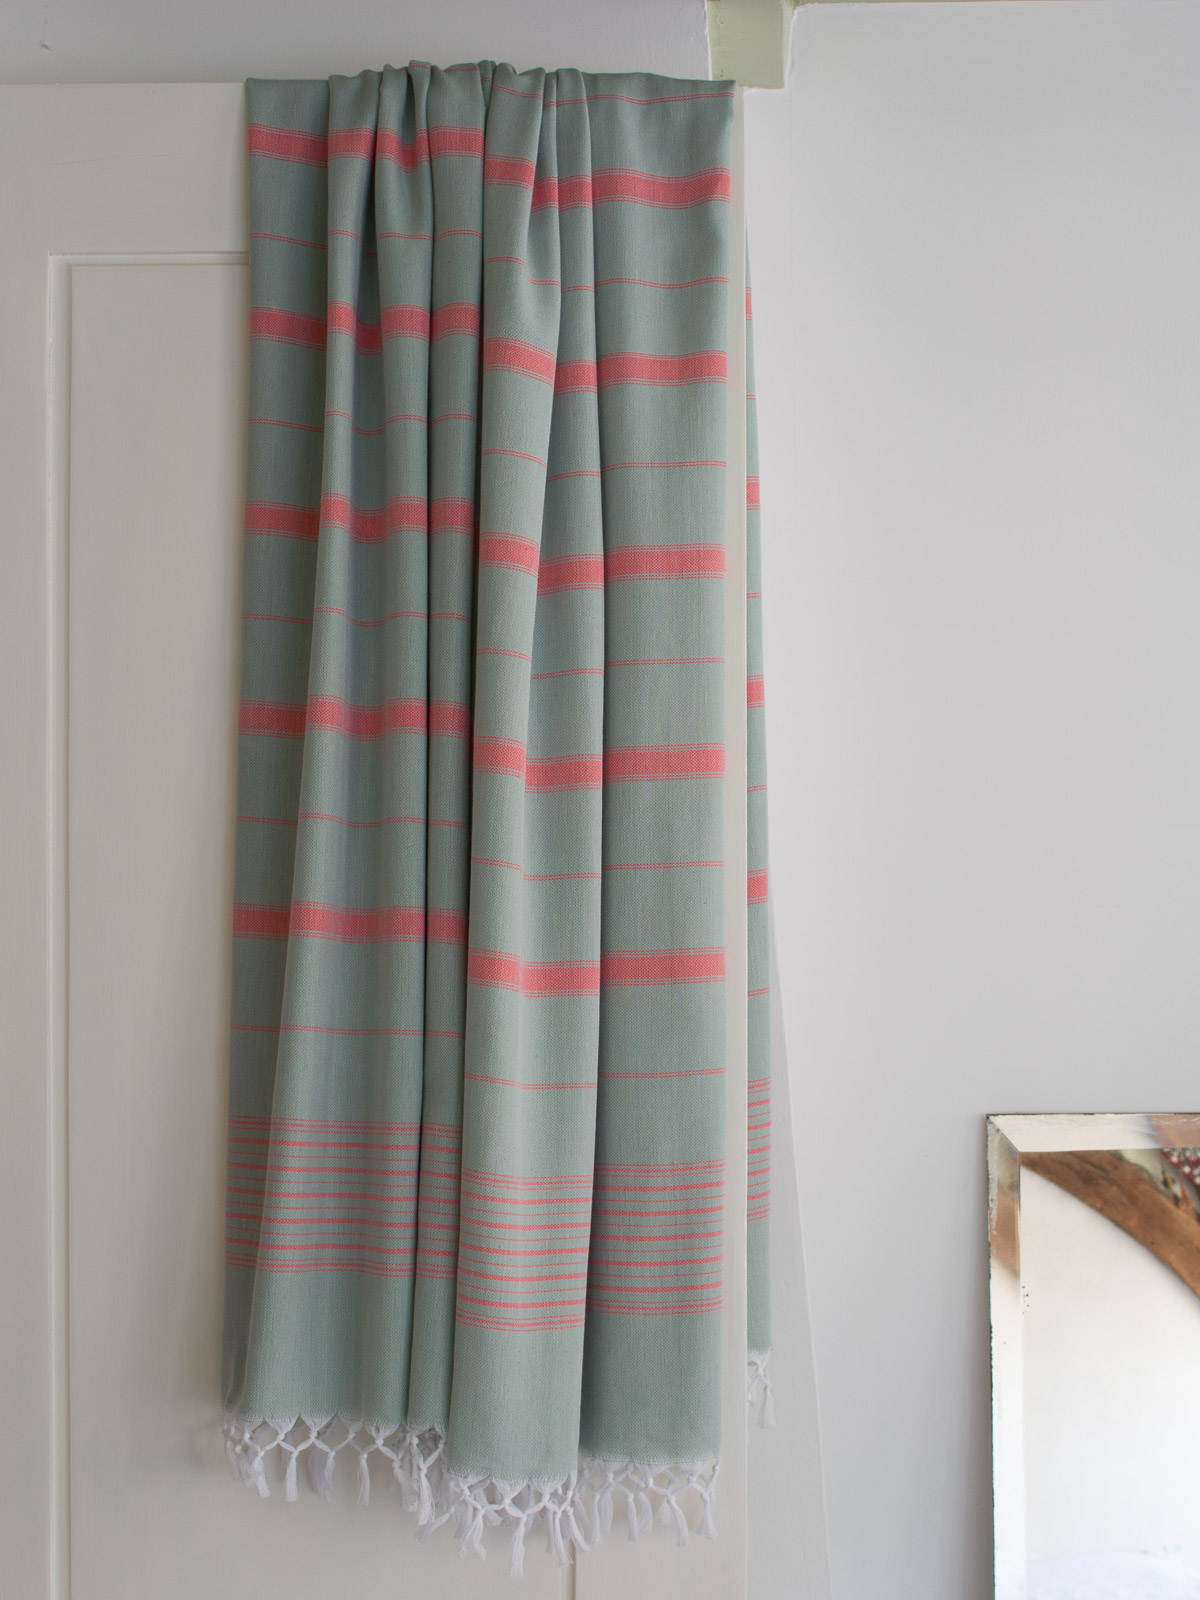 Asciugamano da hammam XL grigio-verde/rosso corallo 220x160cm